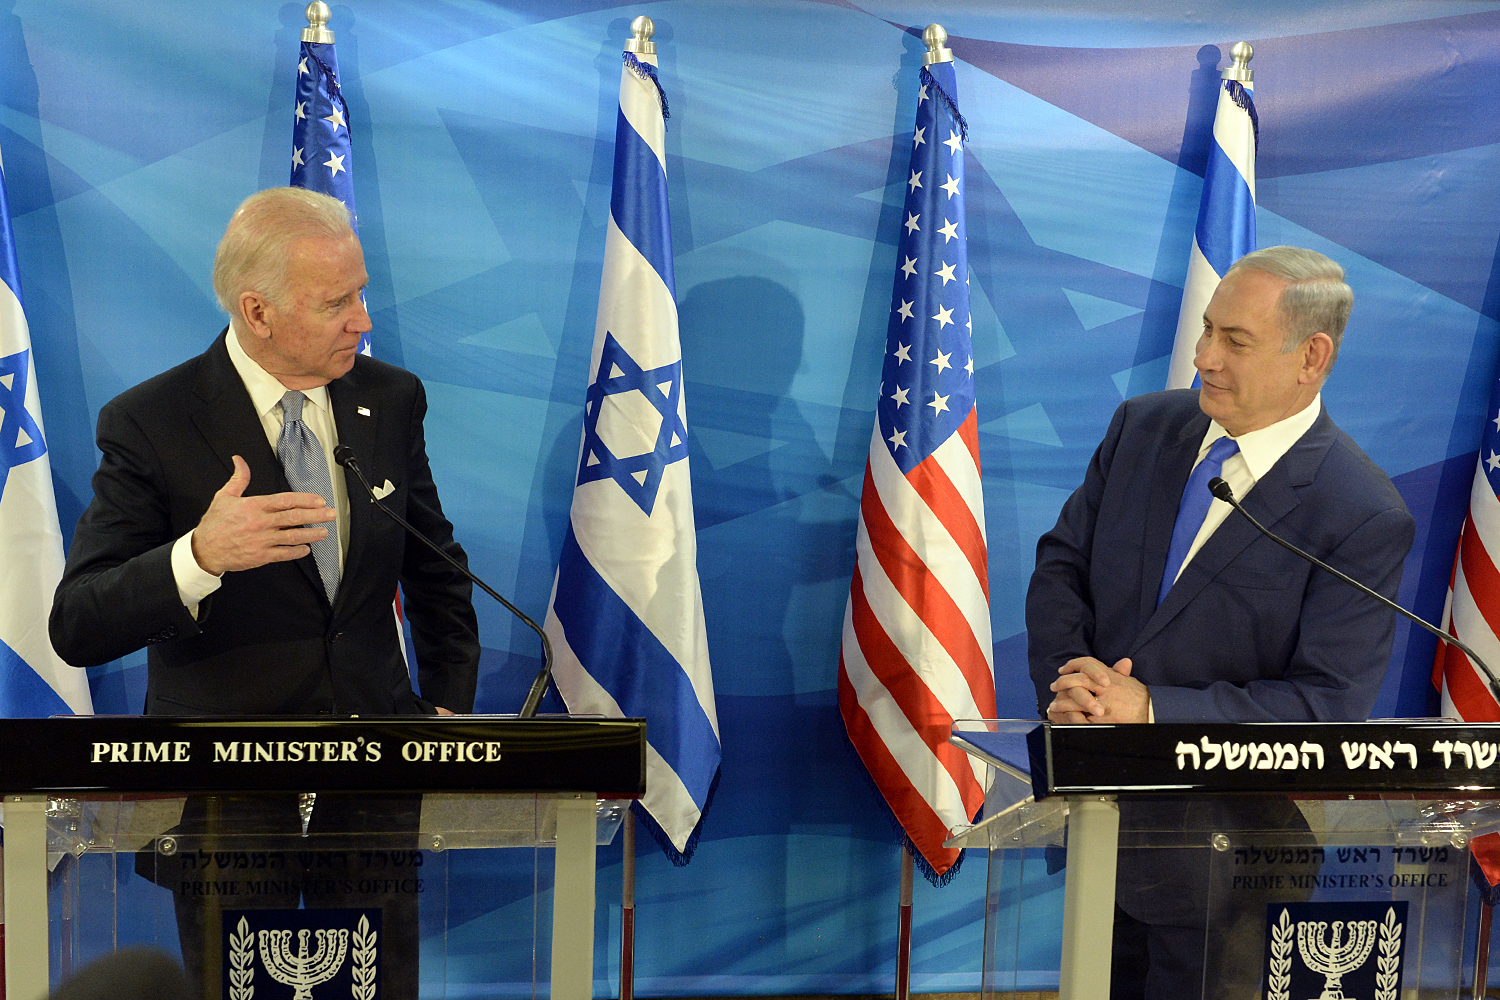 Biden Netanyahu Image U.S. Embassy Tel Aviv Wikimedia Commons